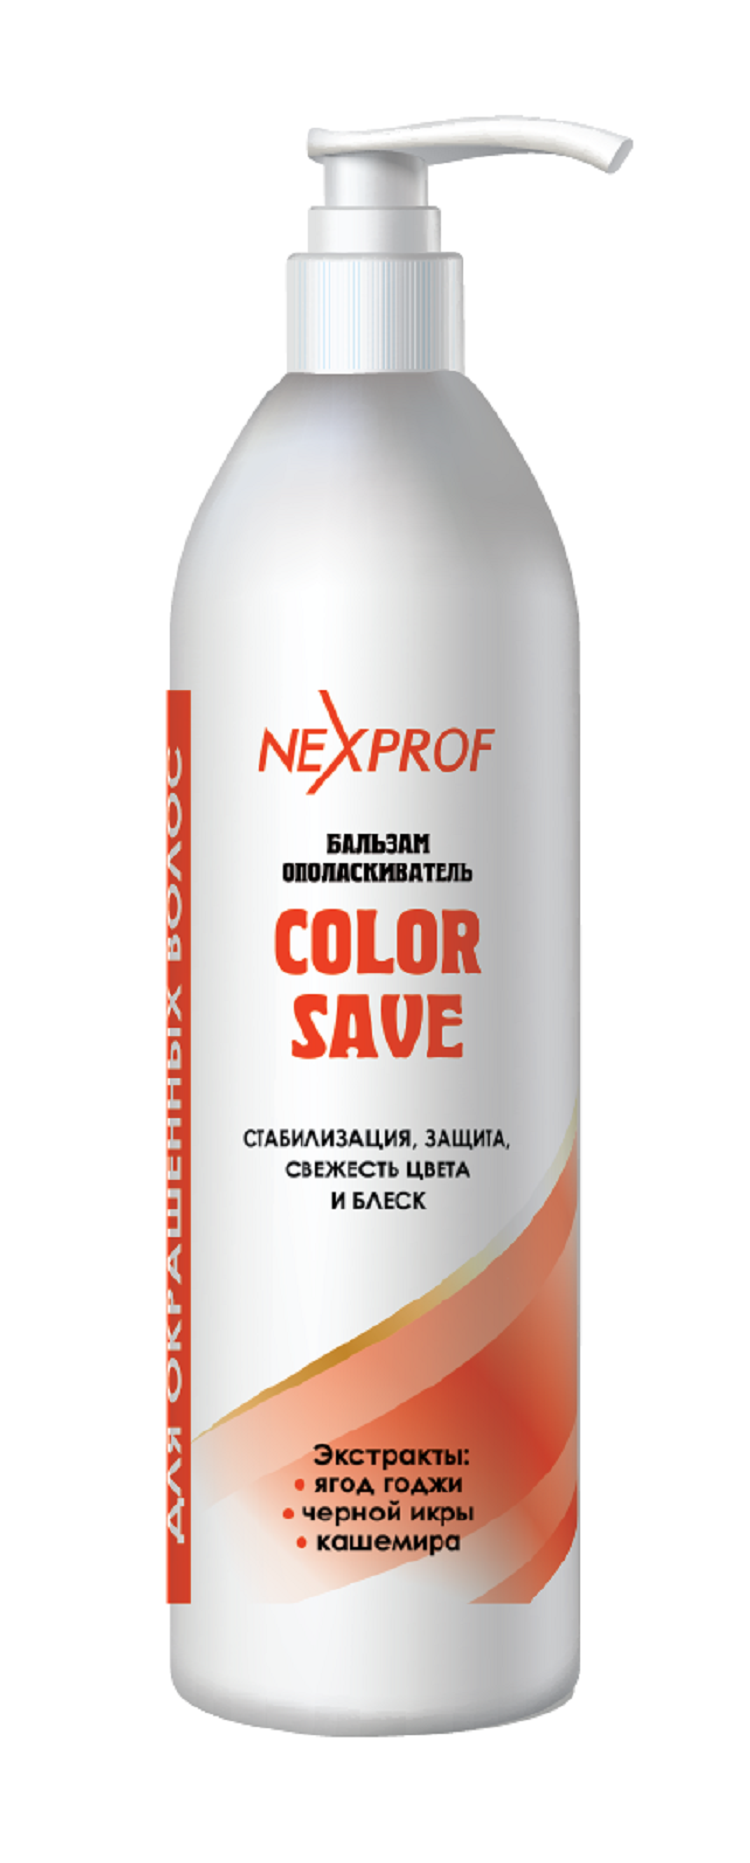 Бальзам для волос Nexxt Professional Craft стабилизация сохранение освежение цвета 1000мл